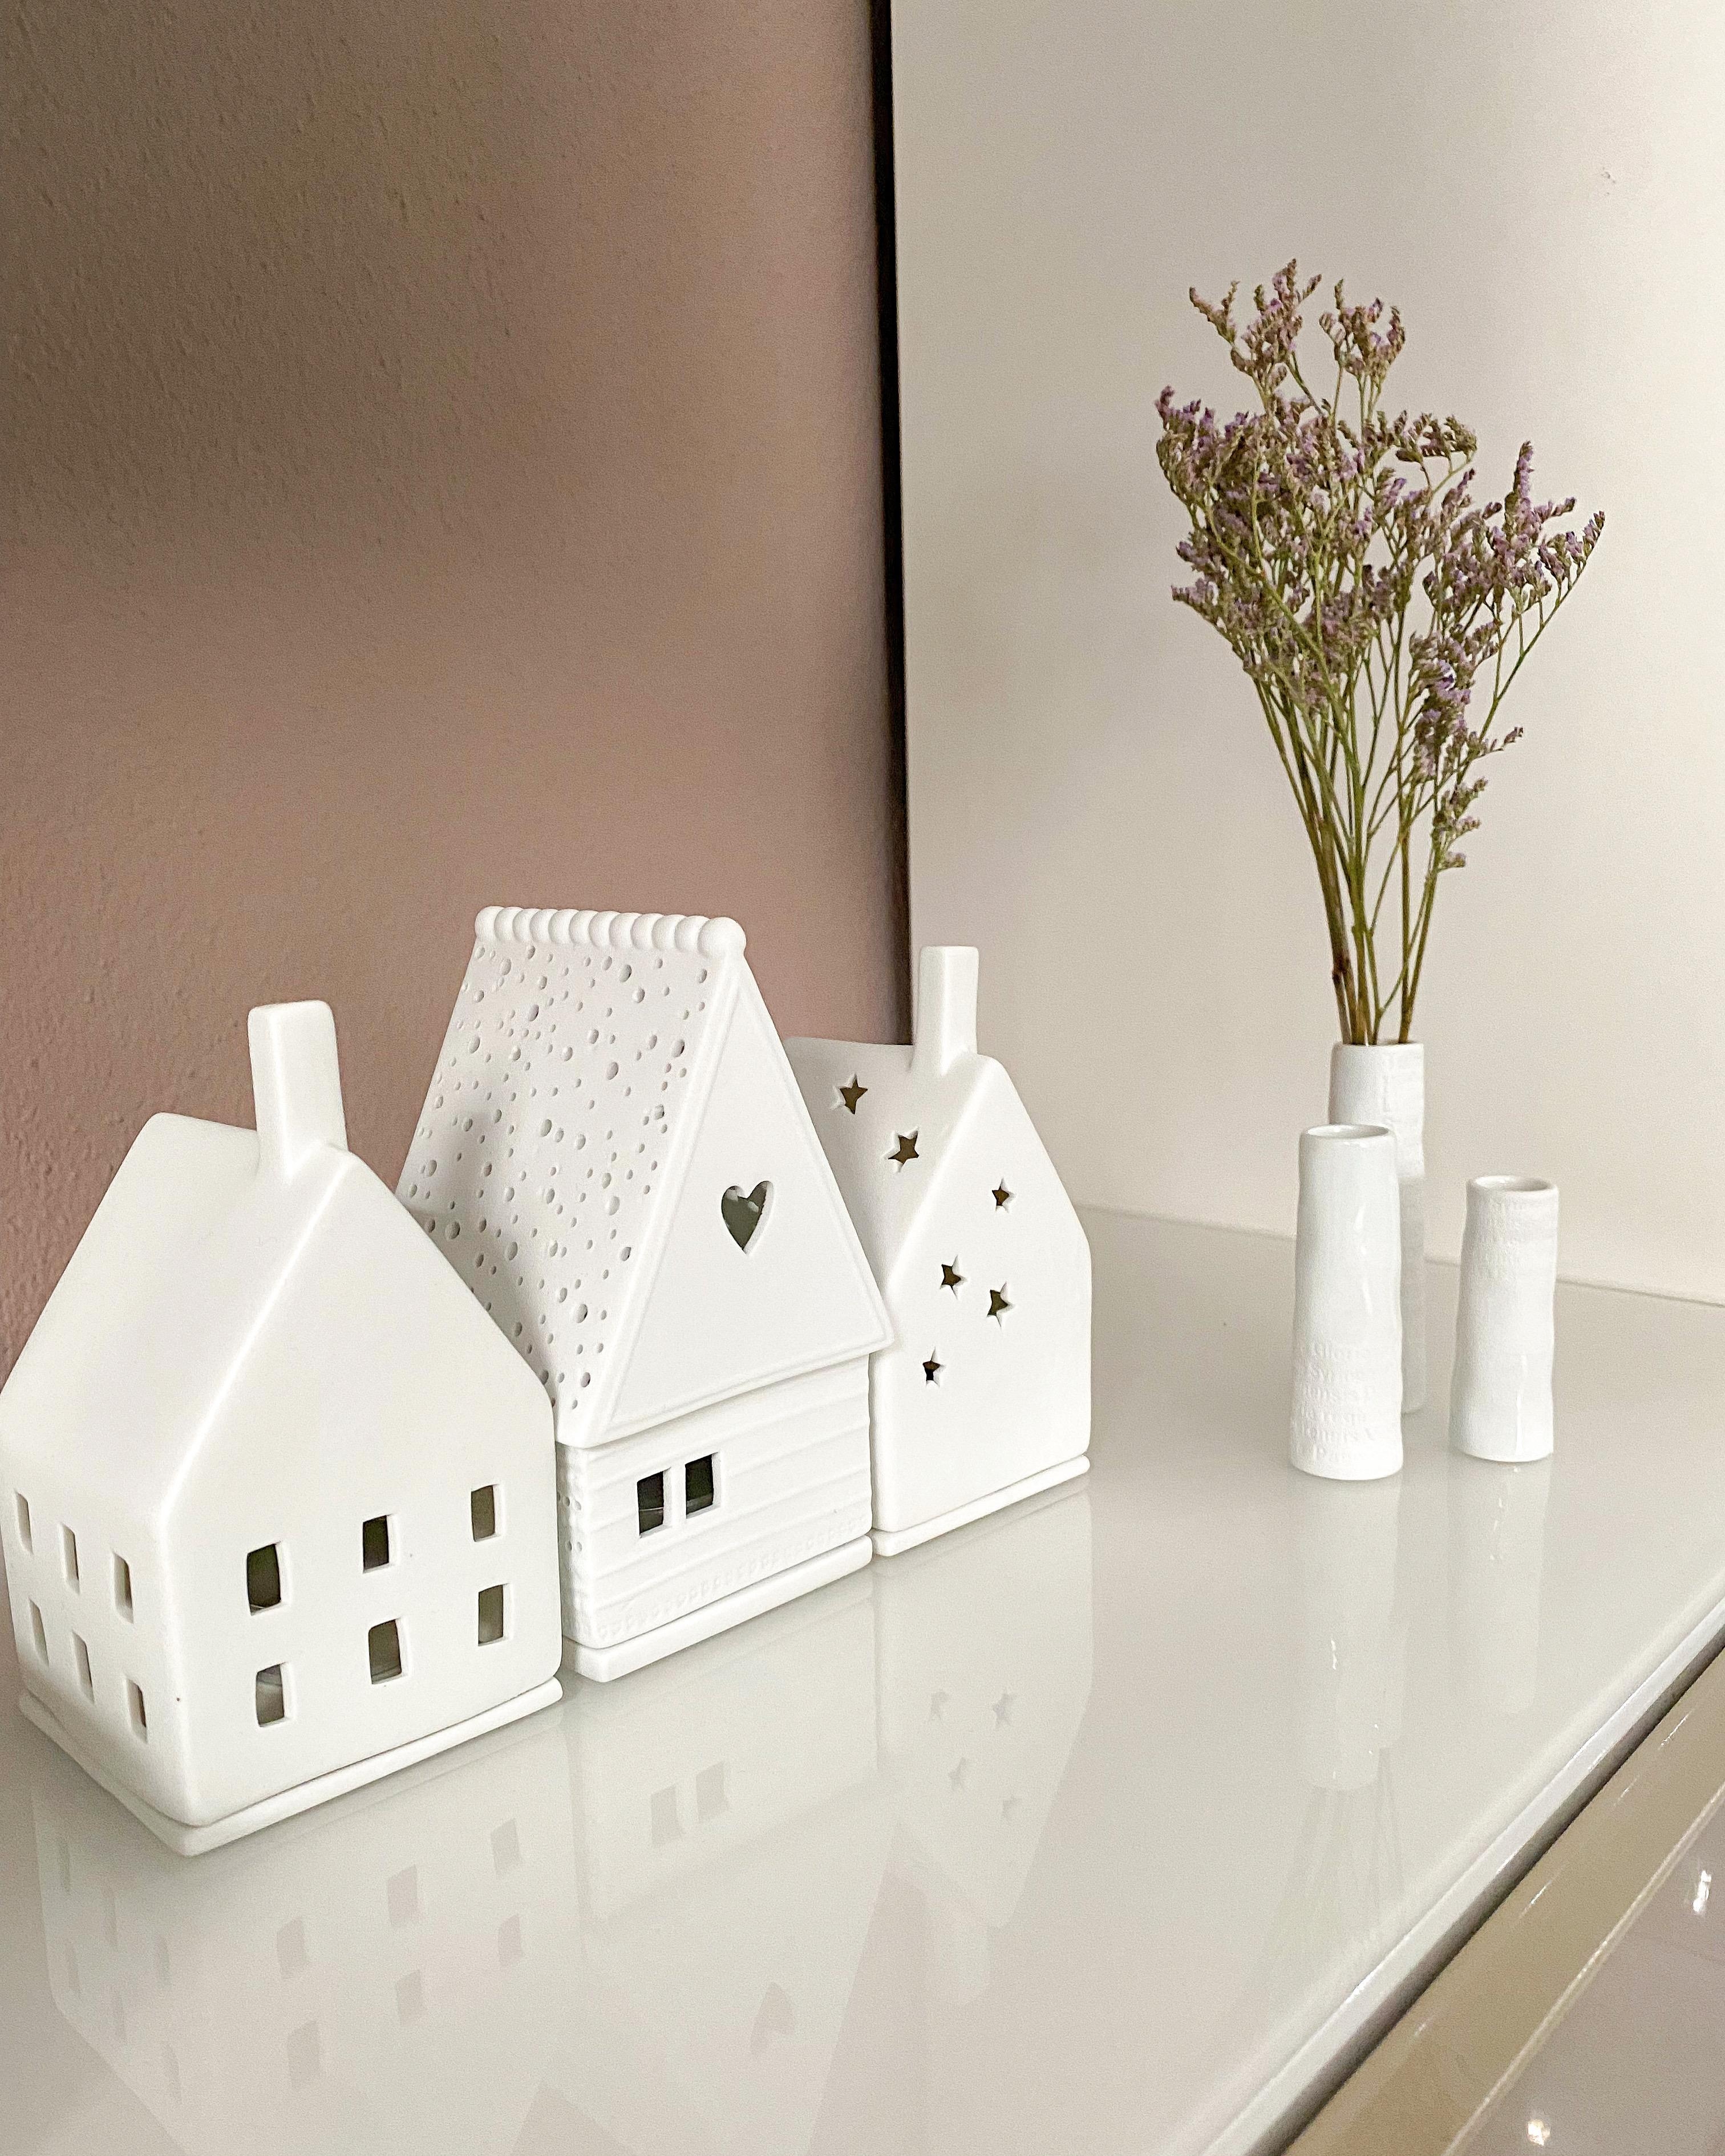 Wundervolle Deko aus
Porzellan ❤️
#häuschen #trockenblumen #vasen #dekoideen